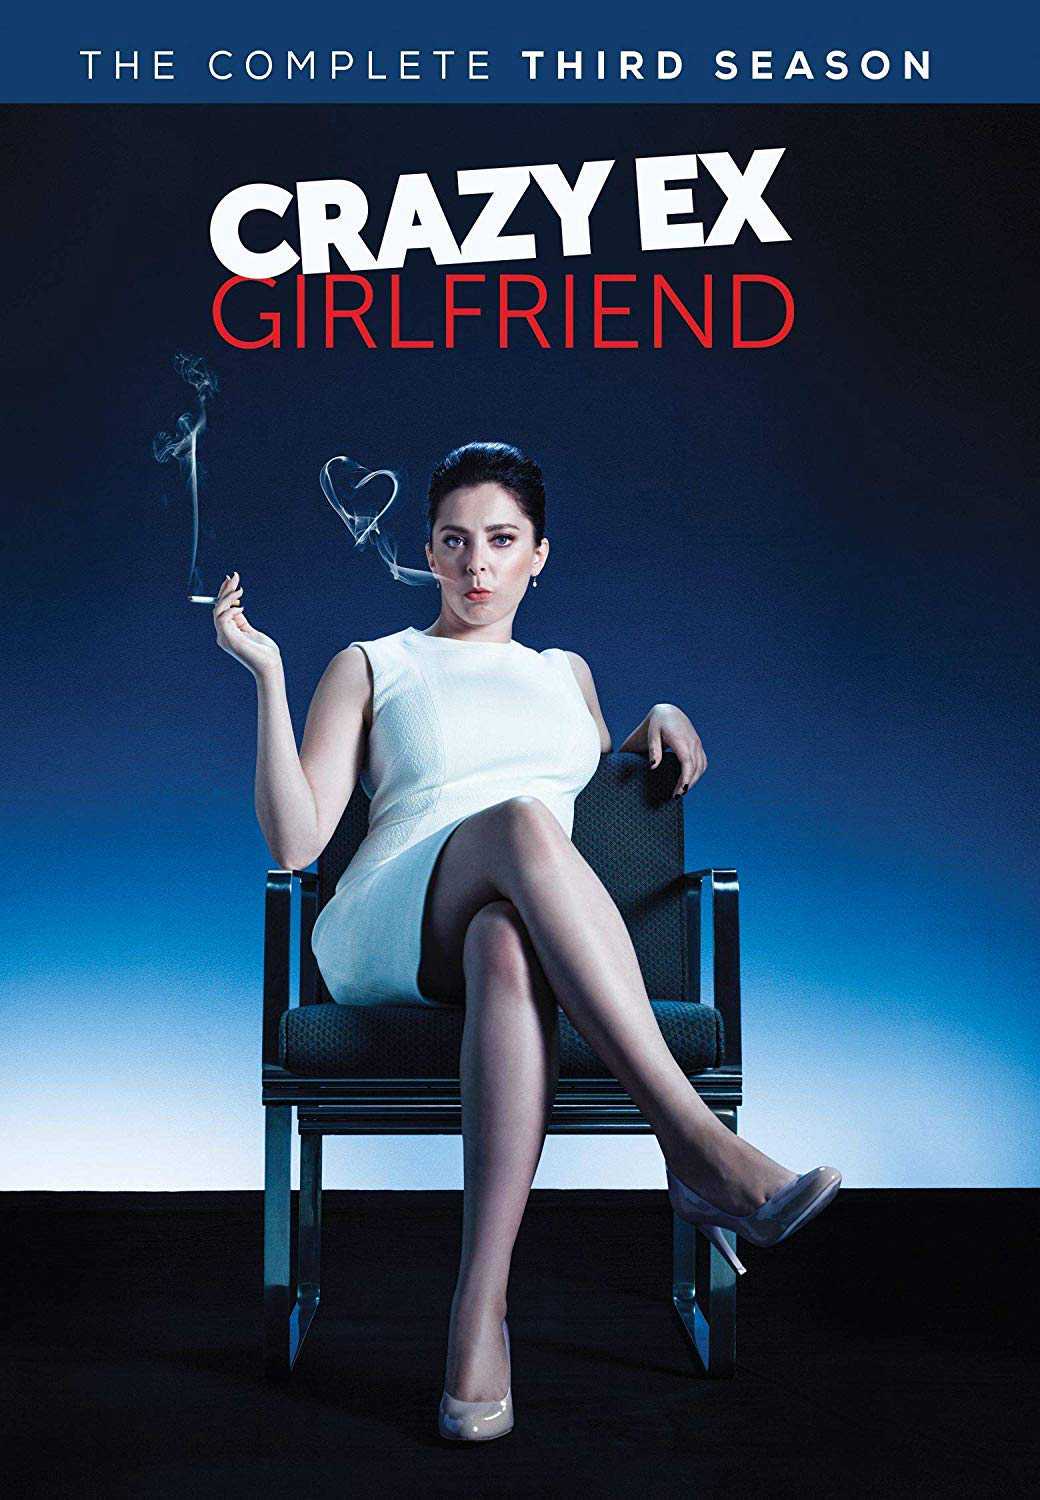 Bạn gái cũ nổi loạn (Phần 3) - Crazy Ex-Girlfriend (Season 3)